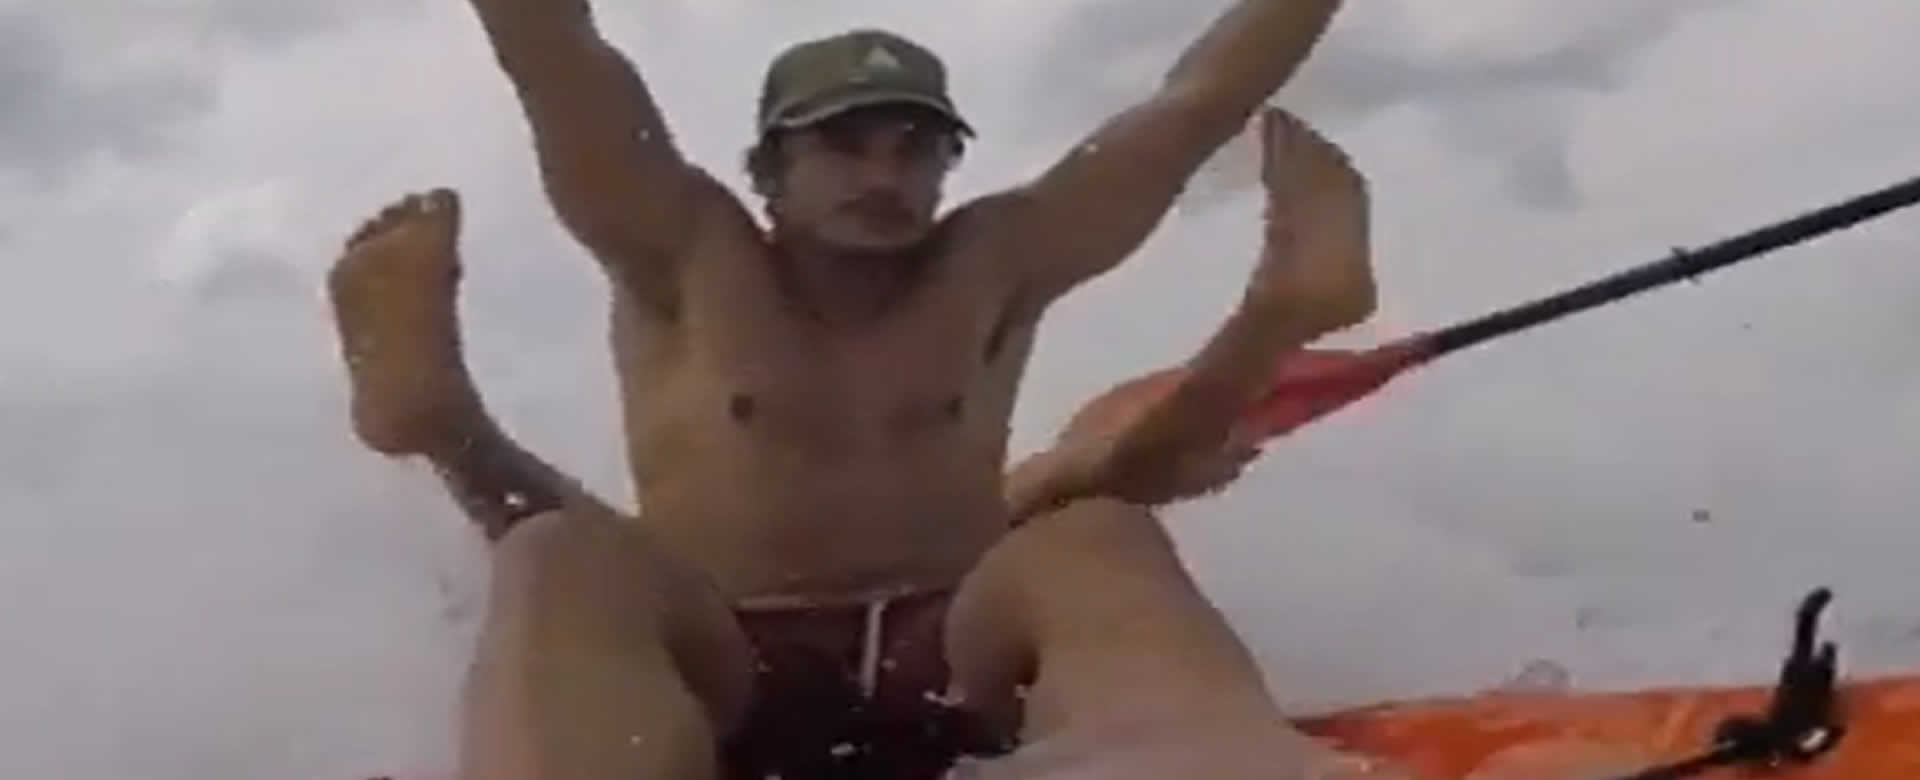 James Franco disfruta de una aventura extrema en playa Colorado, Tola